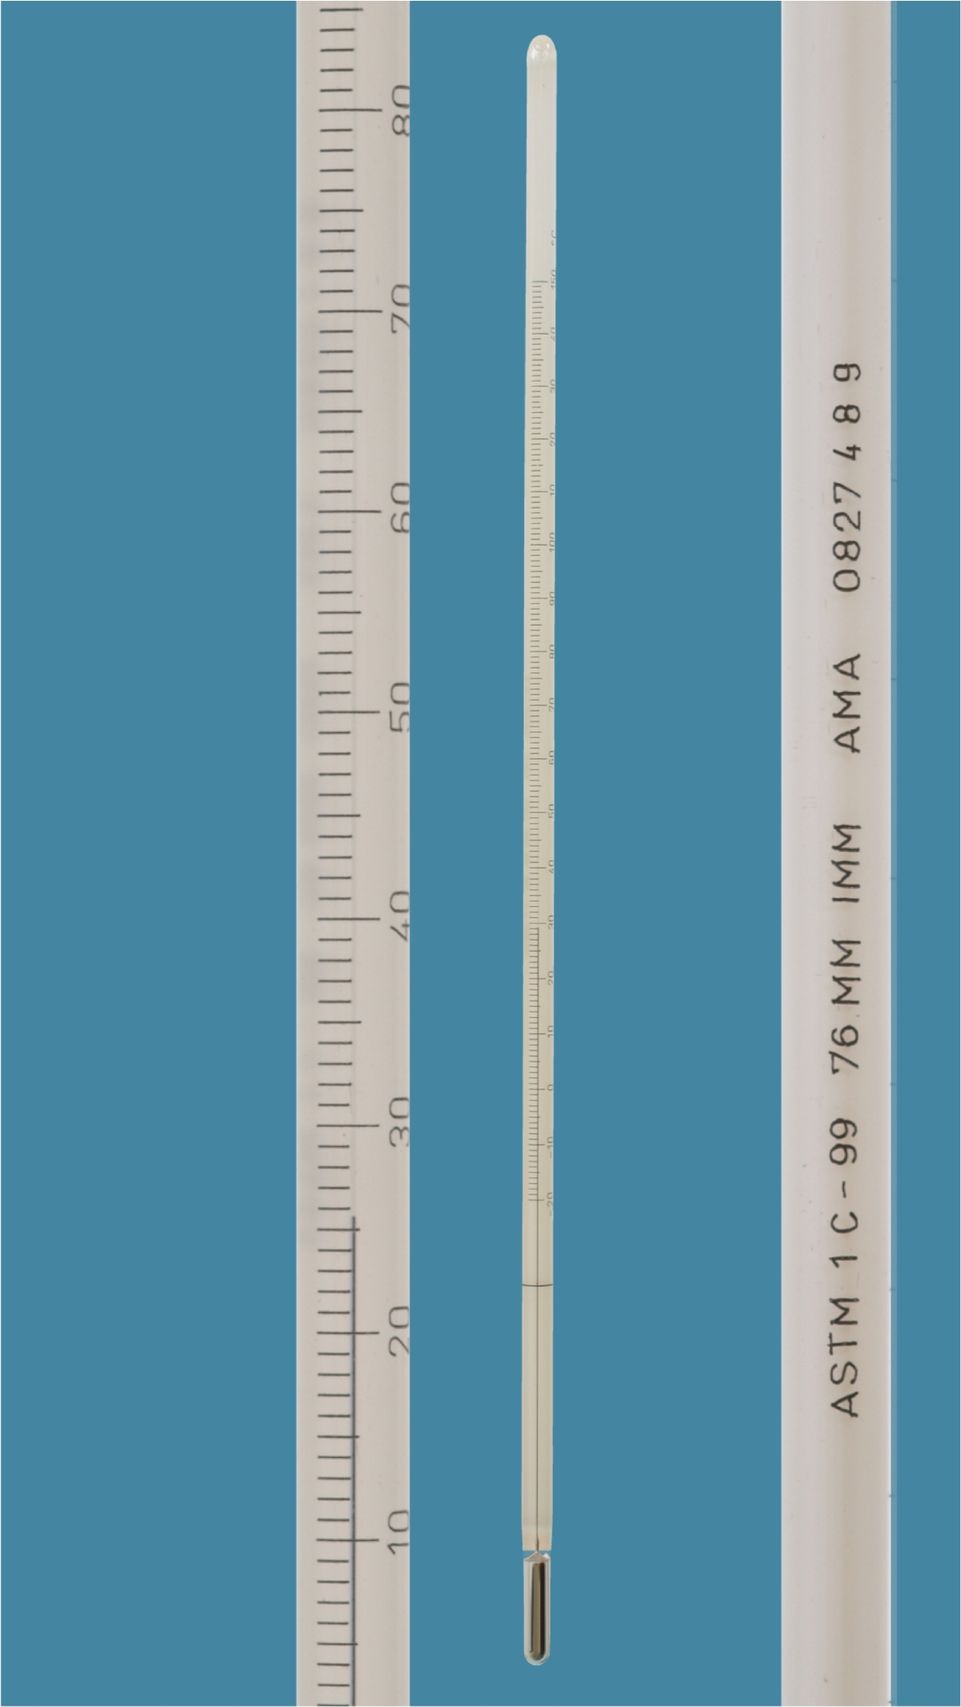 Thermometer ähnlich ASTM 2 F, Stabform, weißbelegt, 20+580:2°F